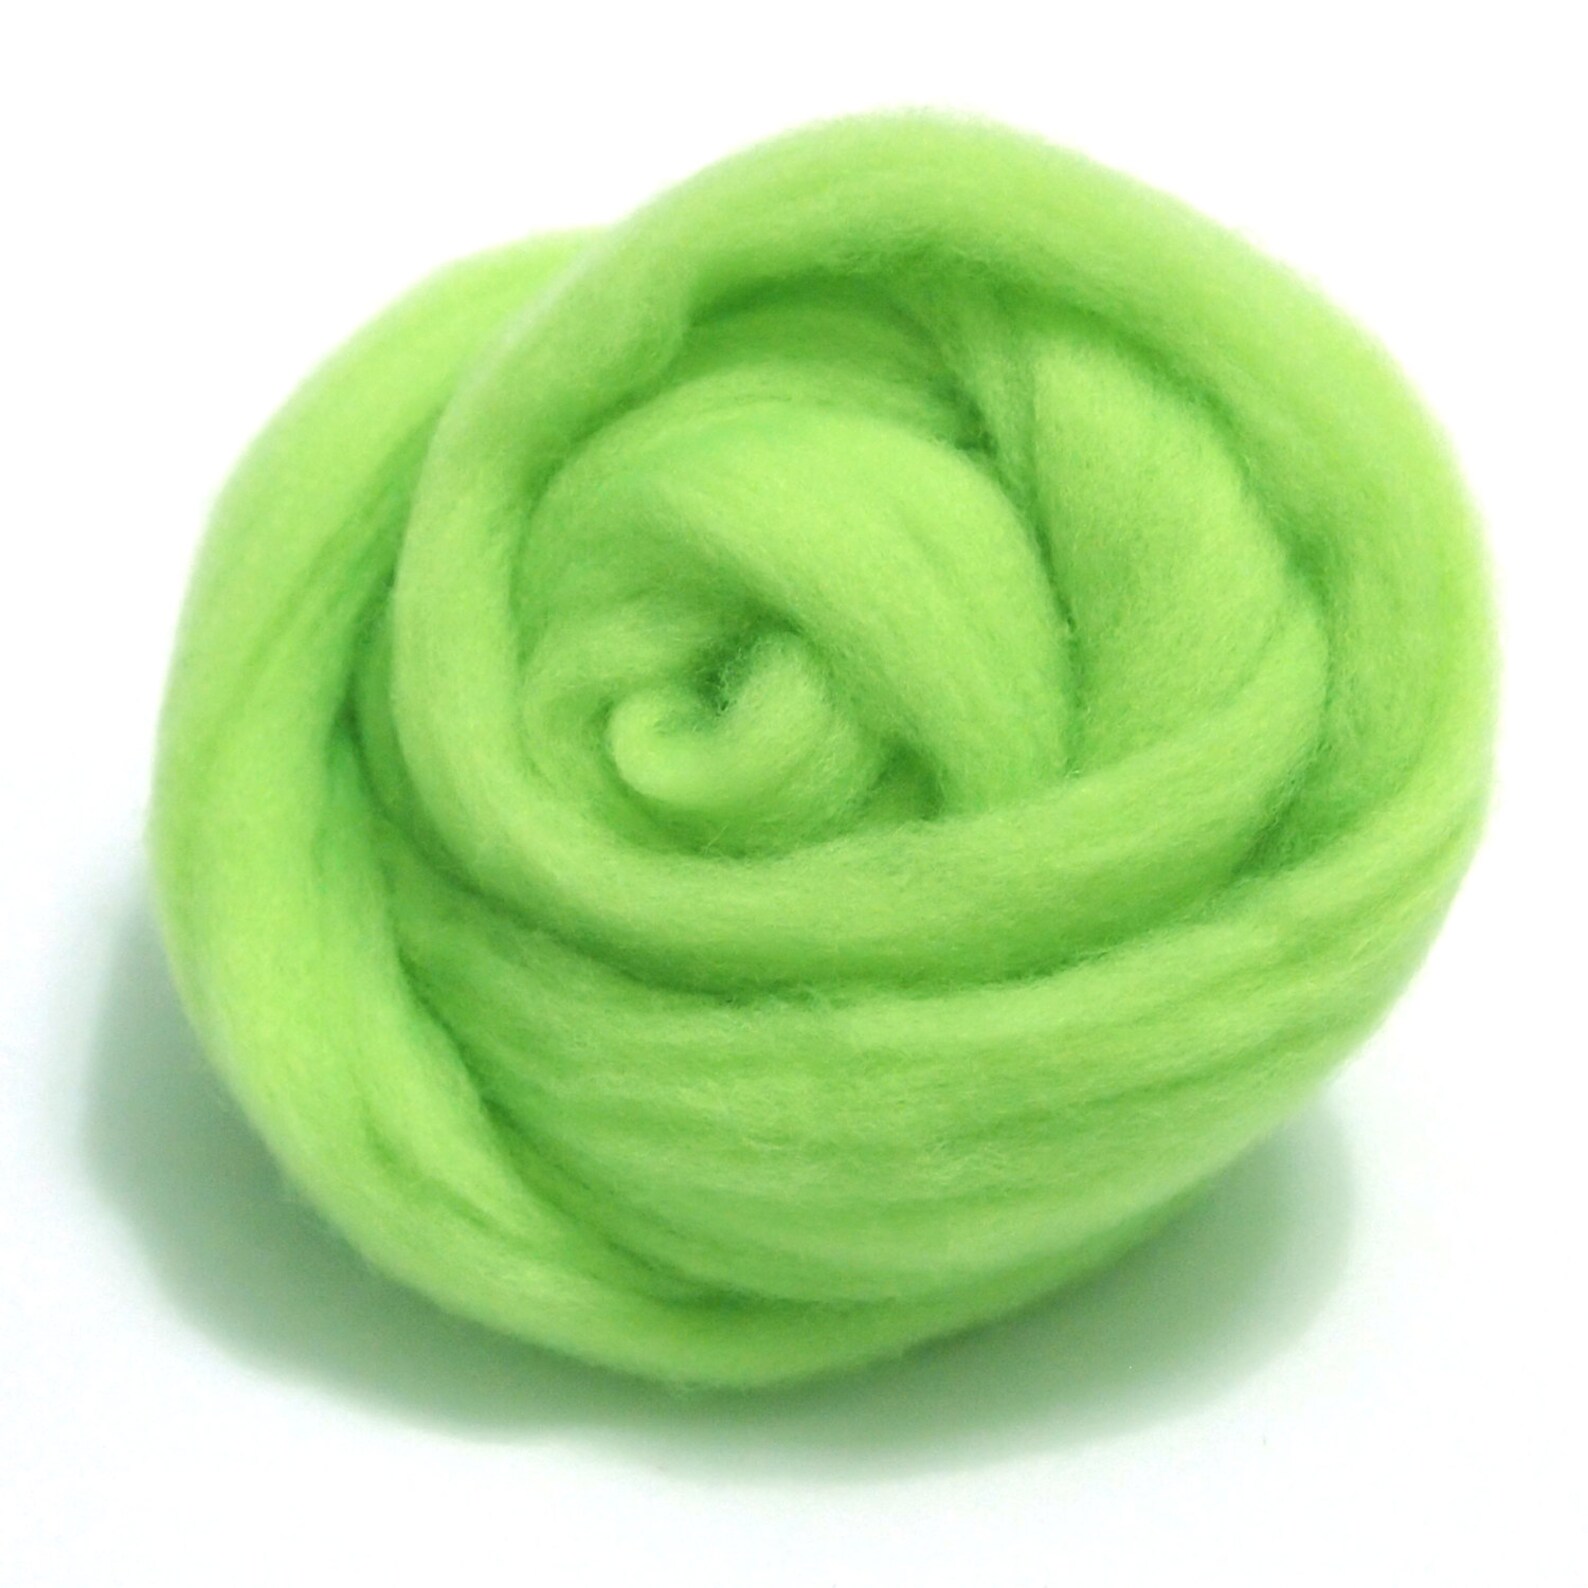 Валяние зеленое яблоко. Предмет из шерсти зеленого цвета. Игрушки для игрушки шорты для валяния маленькие и легкие. Лесная шерсть